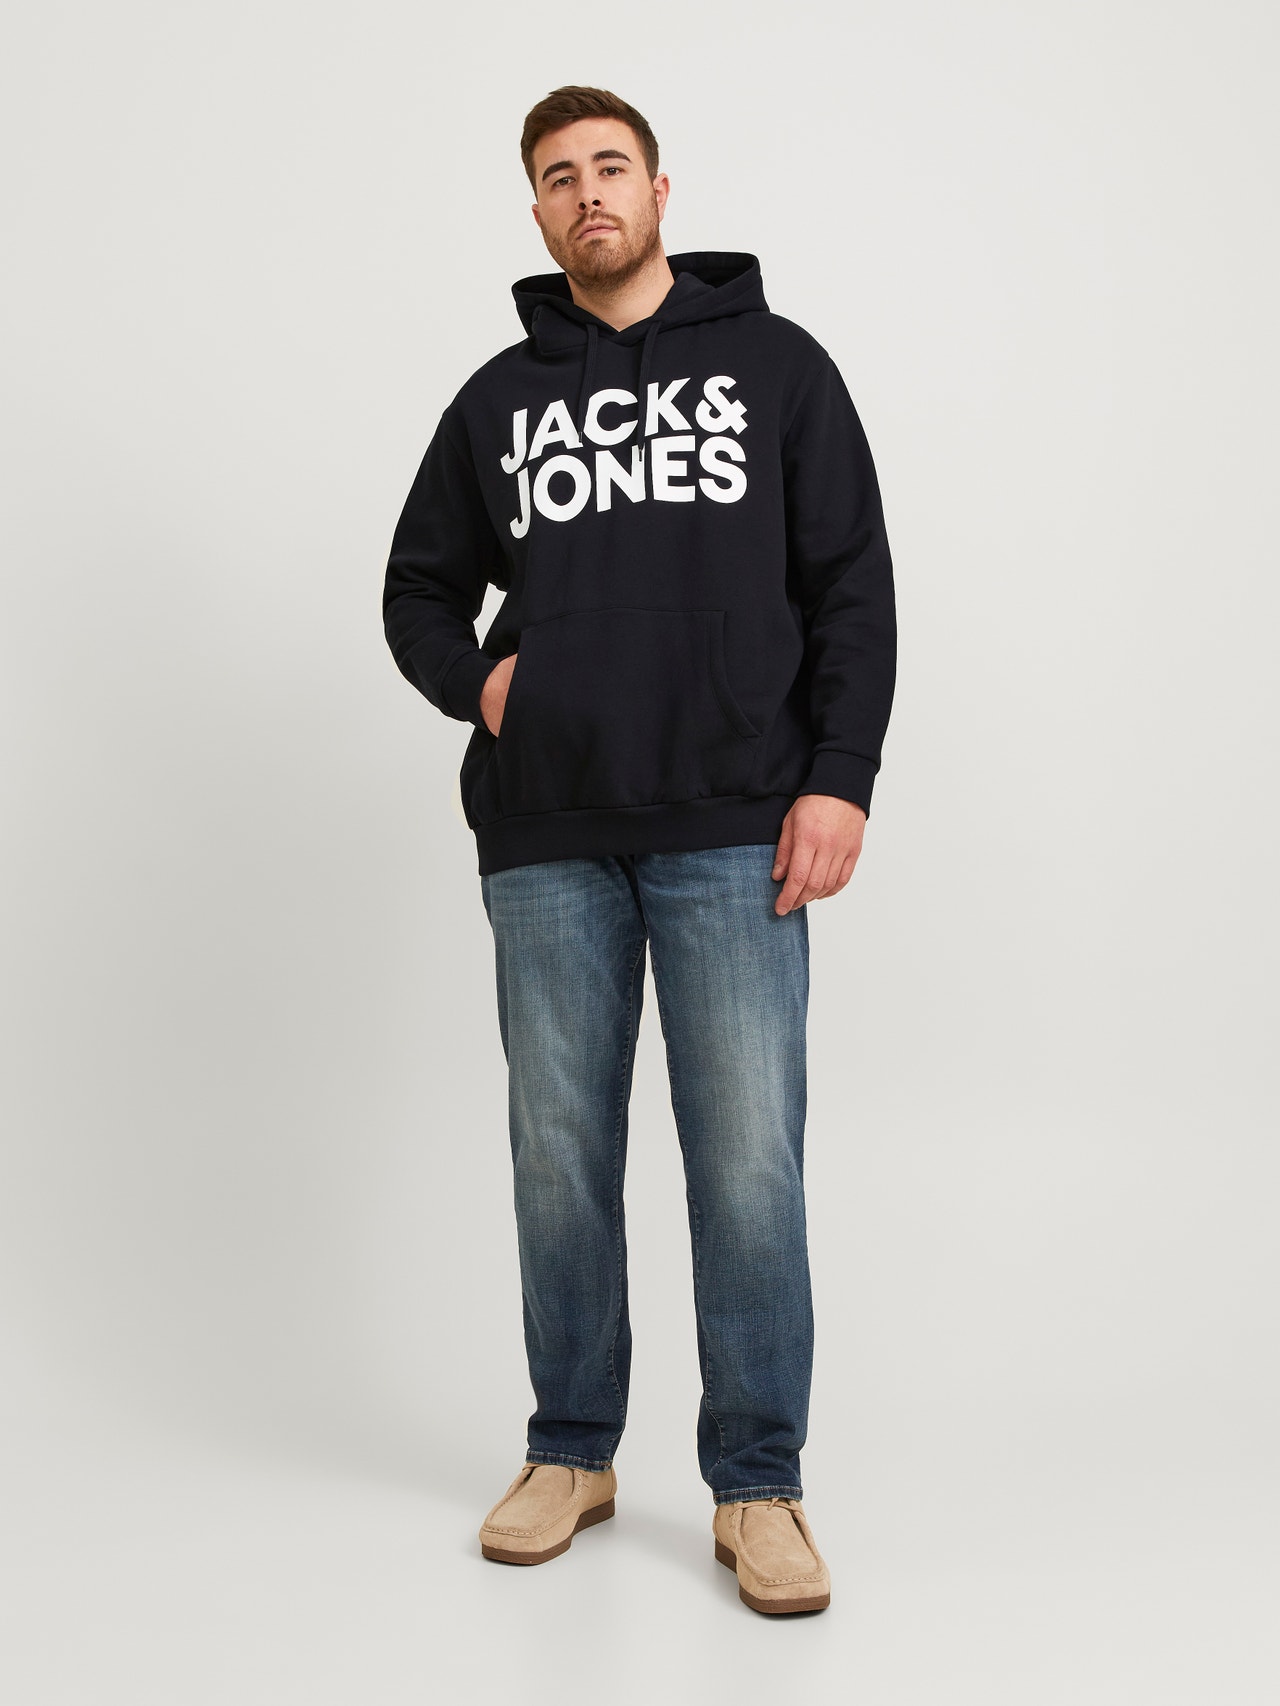 Jack & Jones Plus Size Felpa con cappuccio Con logo -Black - 12163777